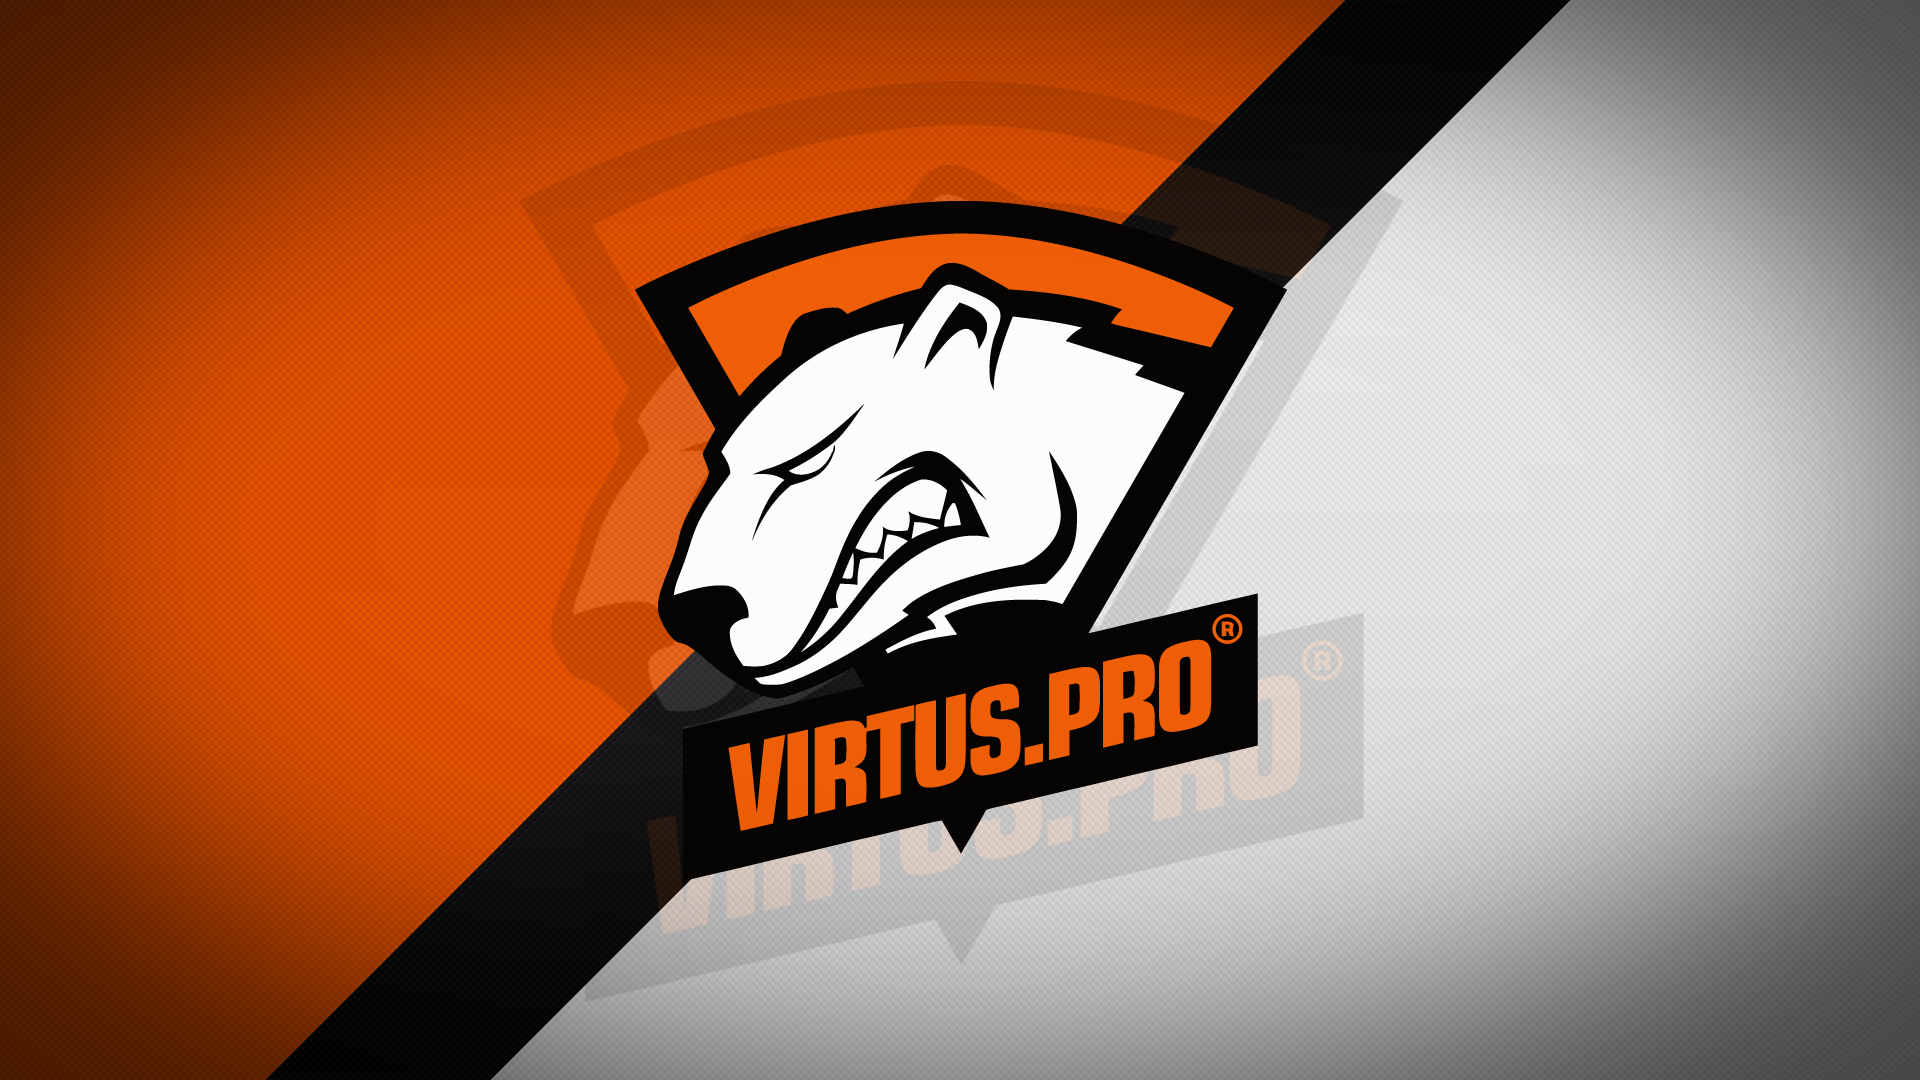 Wallpaper Virtus pro logo